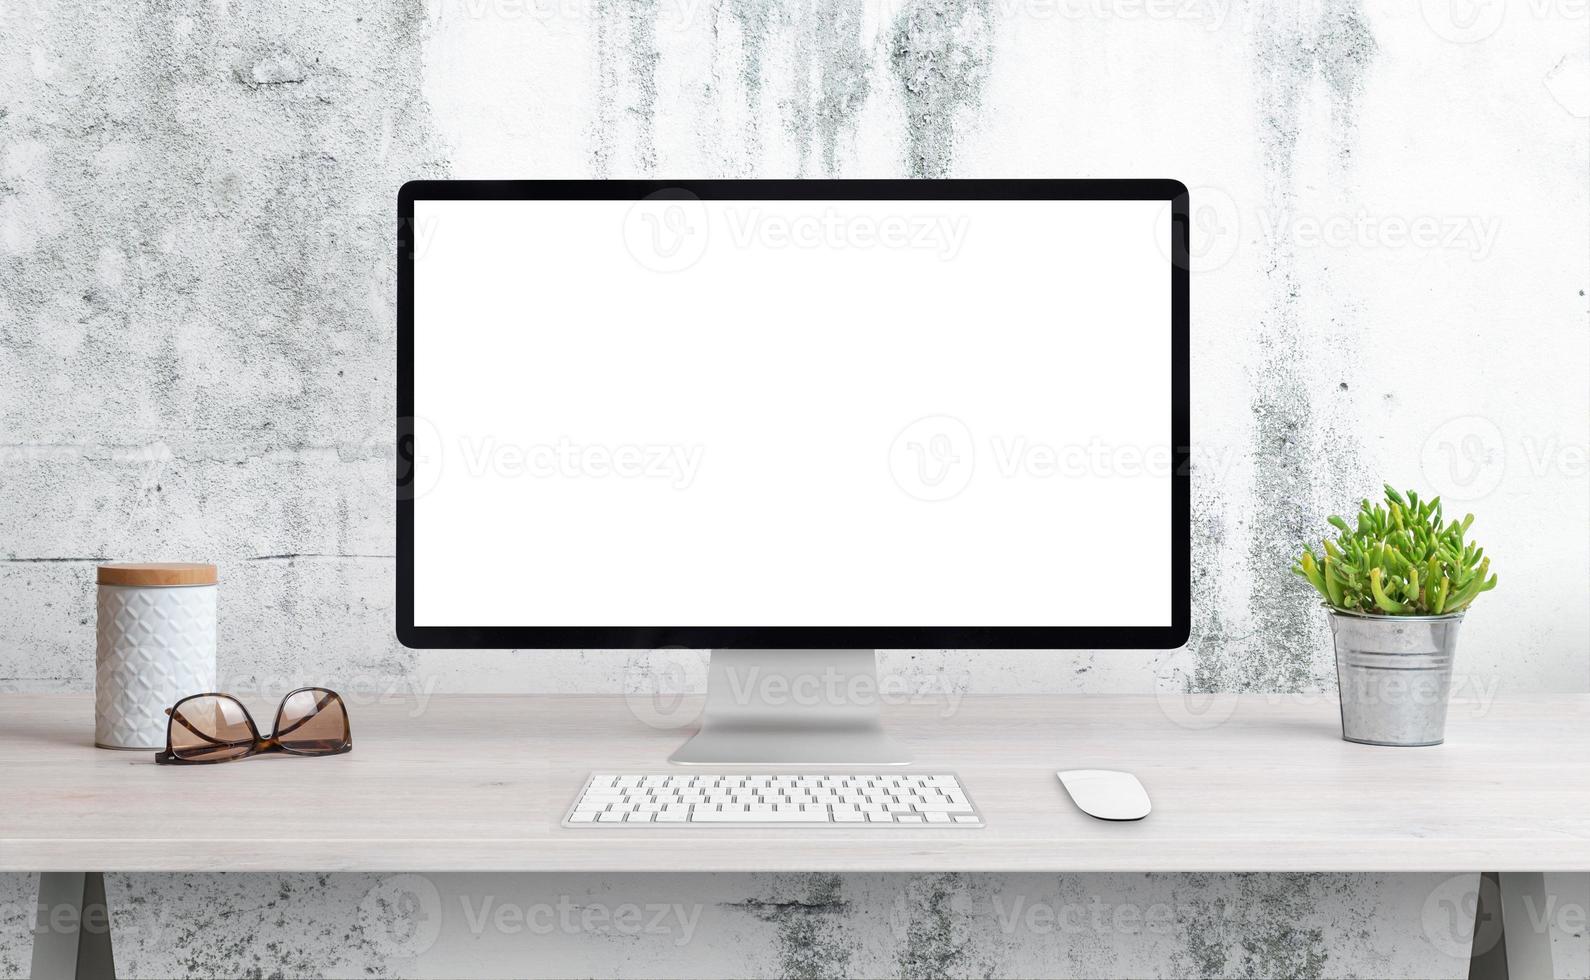 computeranzeige auf dem schreibtisch mit isoliertem bildschirm für modell, wep-seitenpräsentation. sauberer schreibtisch mit pflanze, gläsern und box. weiße raue Wand im Hintergrund foto